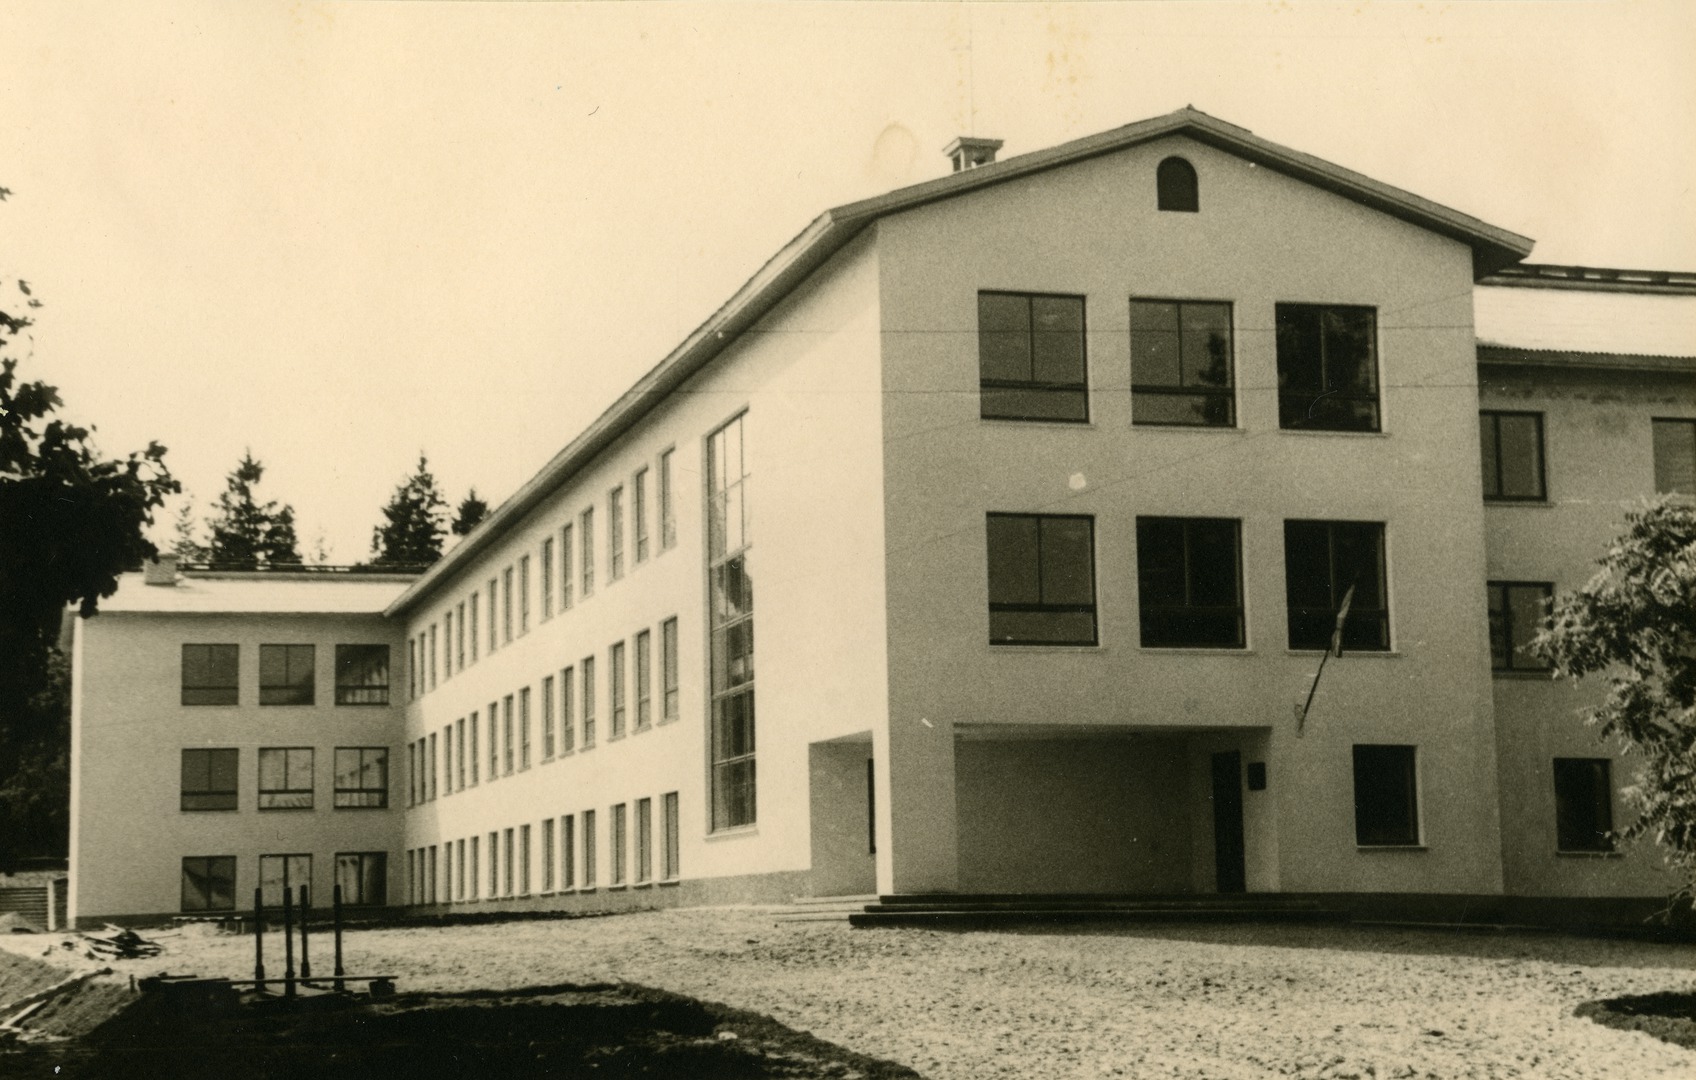 Valga County Otepää Secondary School building